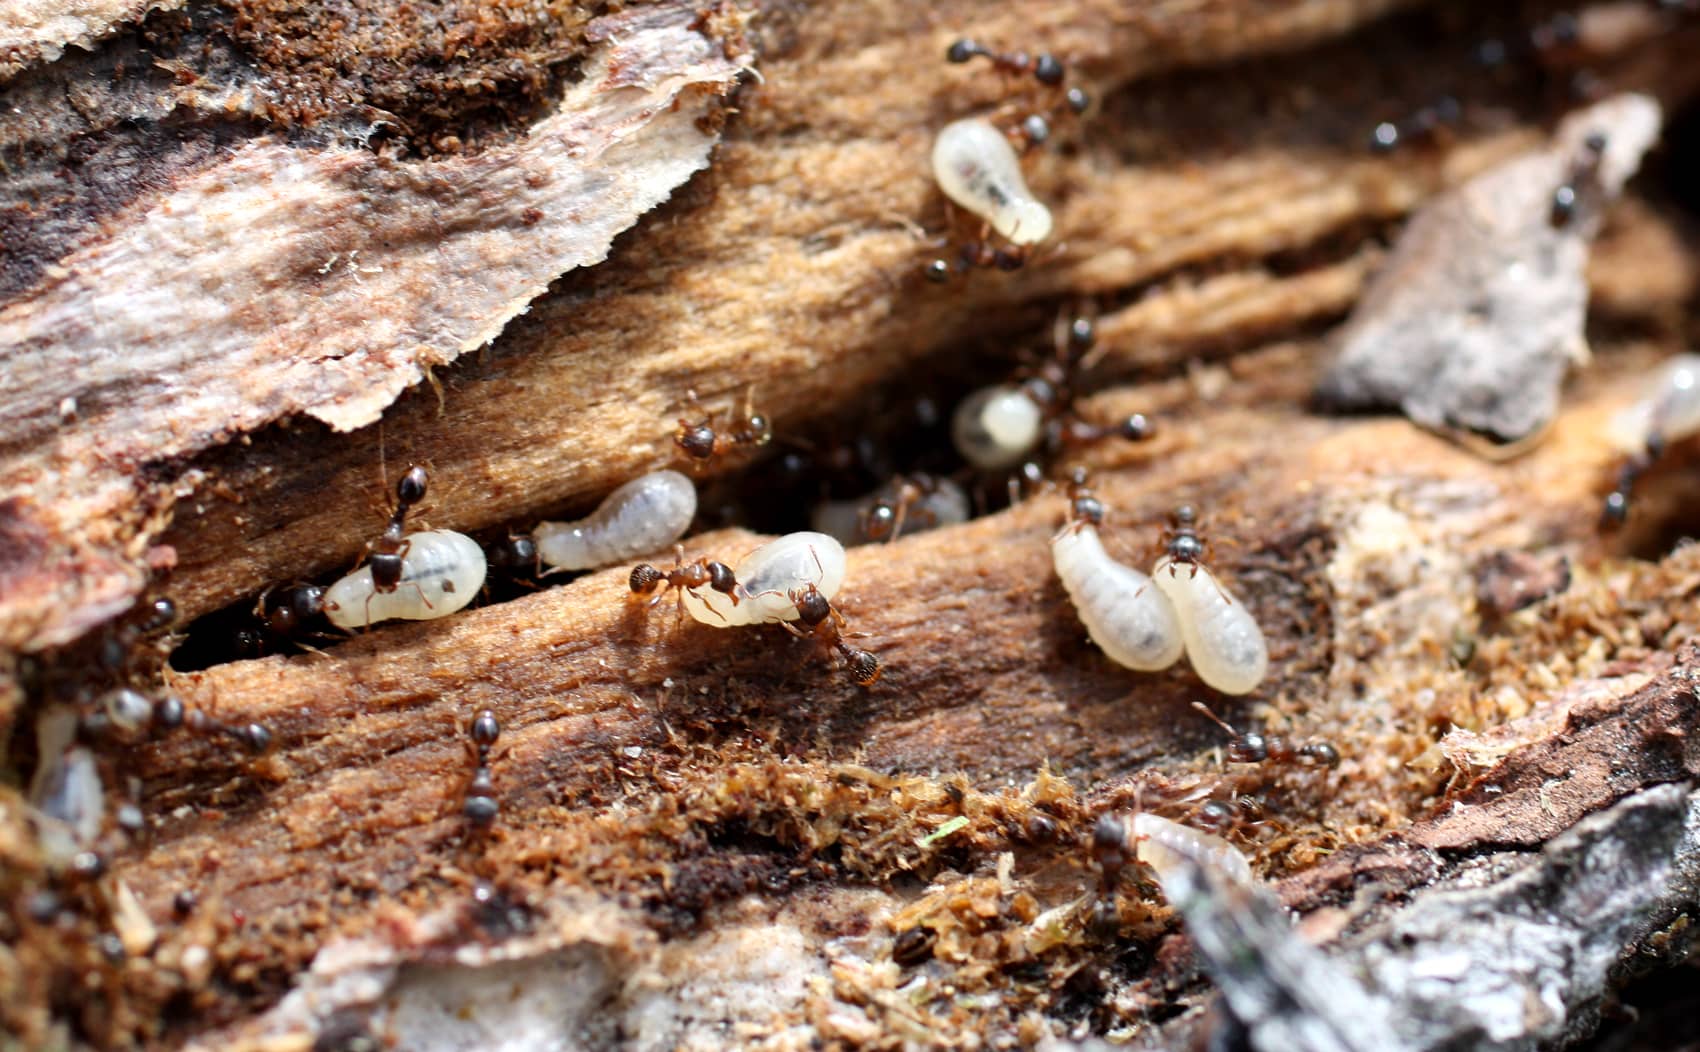 Ants colonizing woodpile 